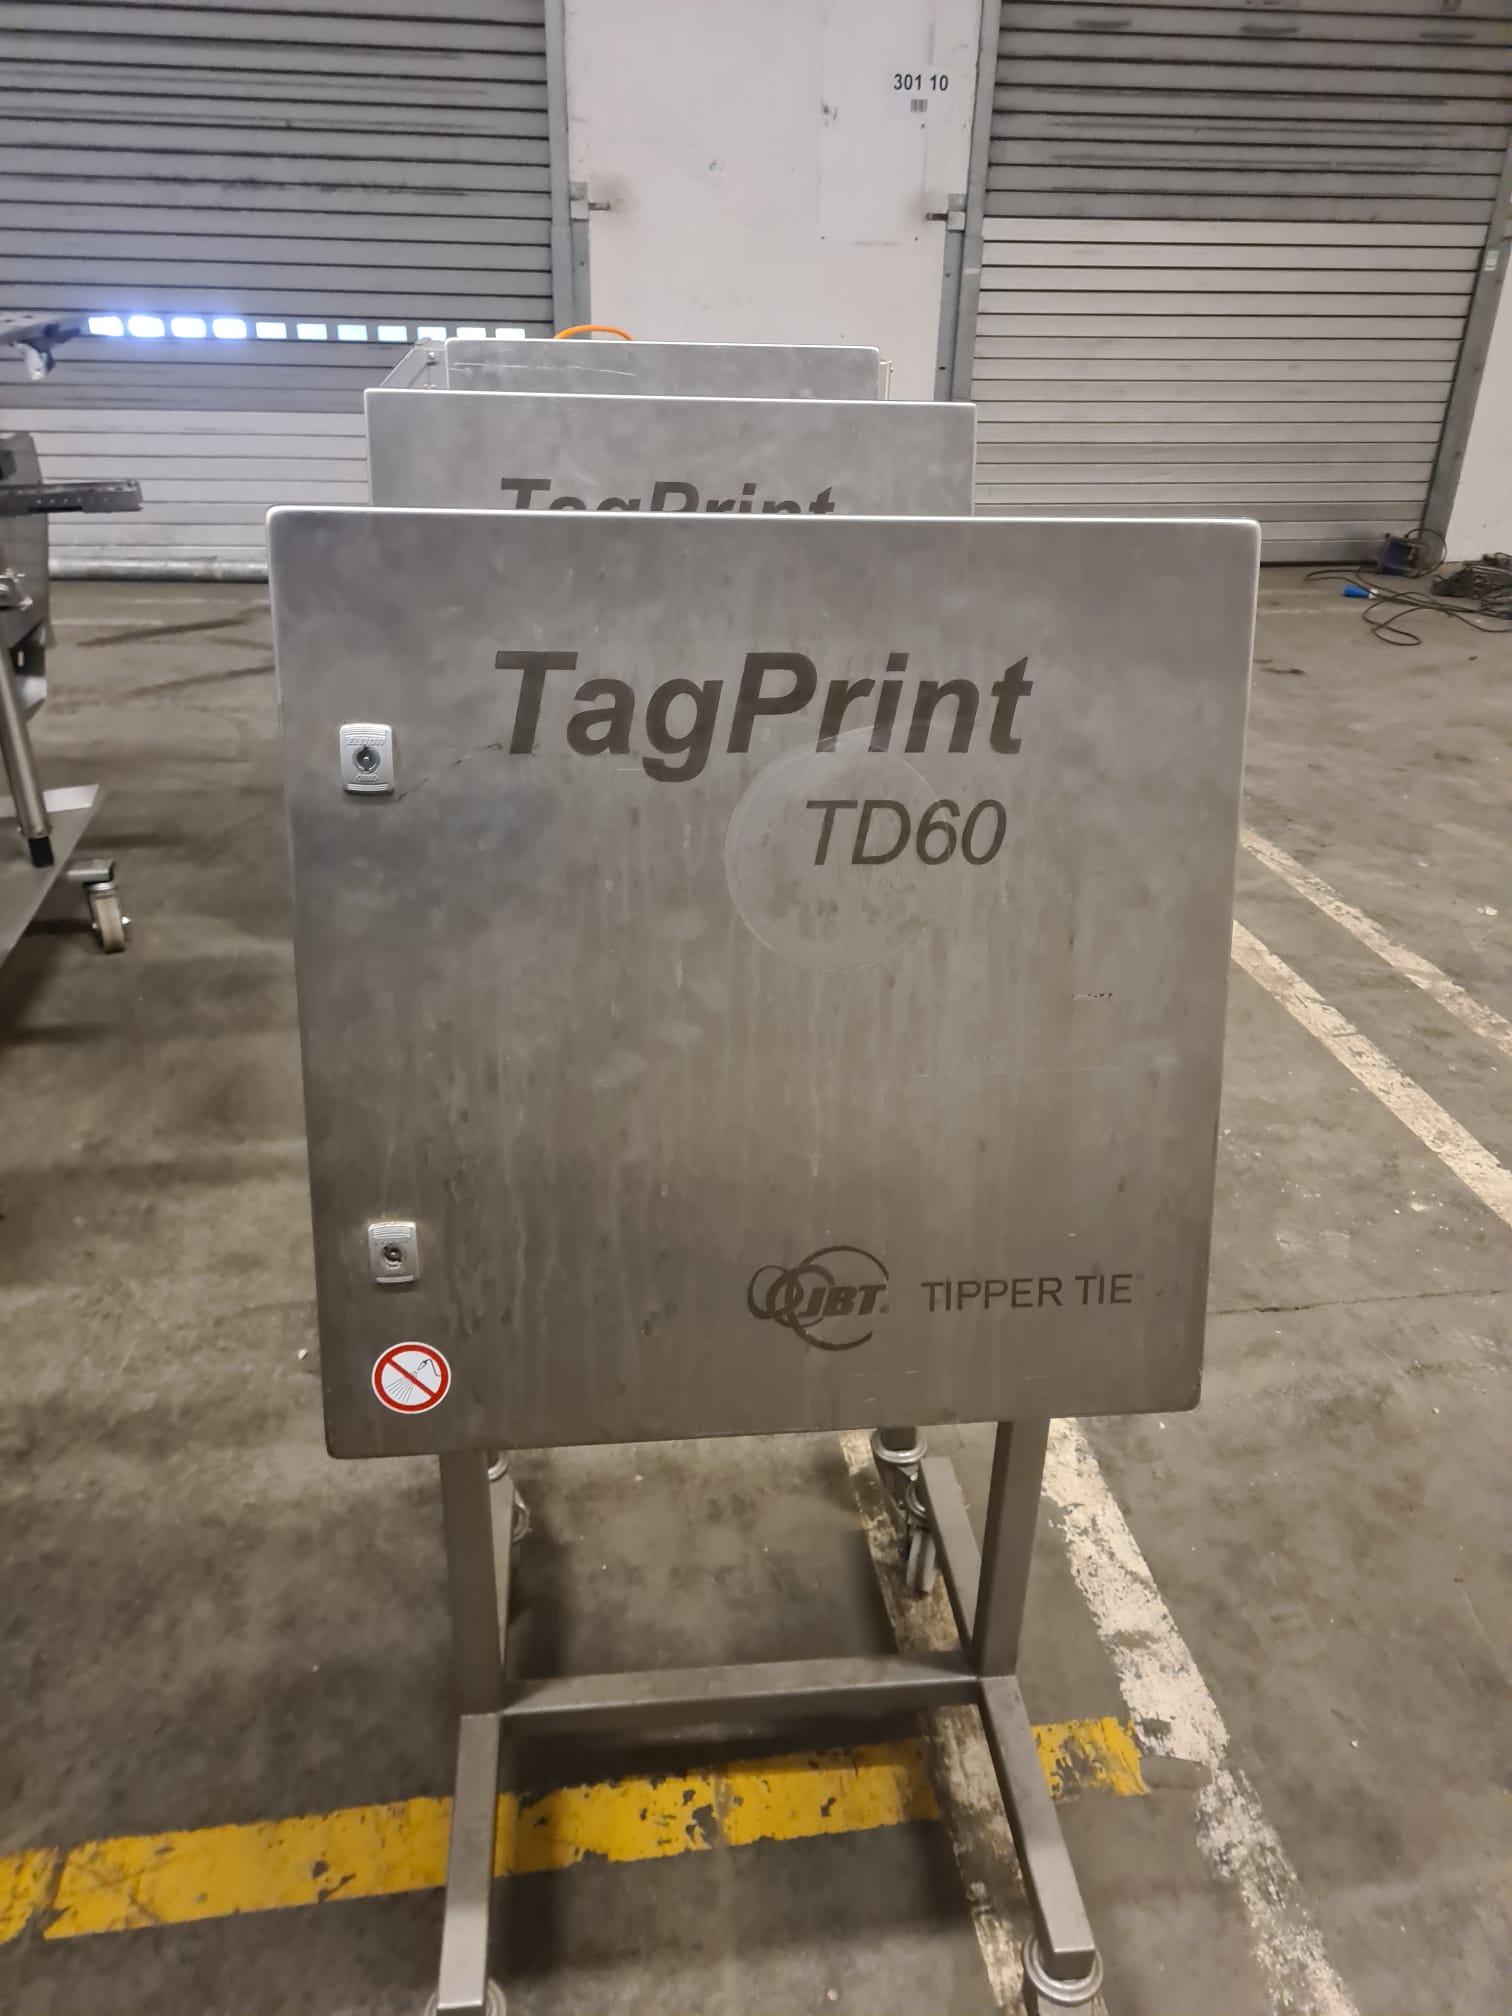 TipperTie TAG Print TD60